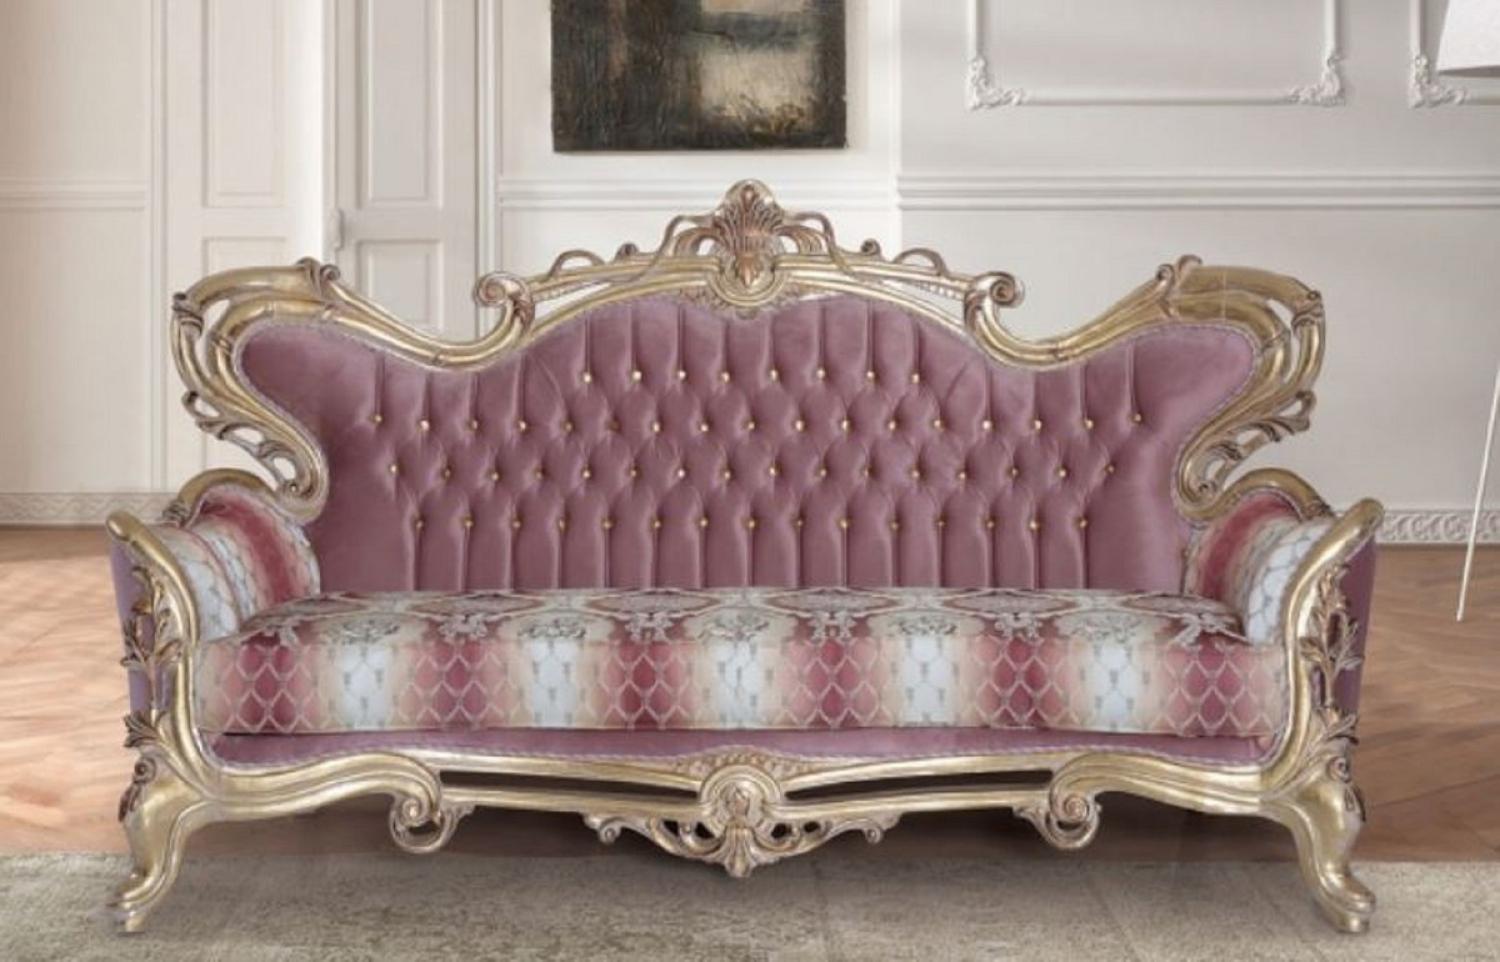 Casa Padrino Luxus Barock Sofa Rosa / Weiß / Gold - Handgefertigtes Barockstil Wohnzimmer Sofa mit elegantem Muster - Barock Wohnzimmer Möbel Bild 1